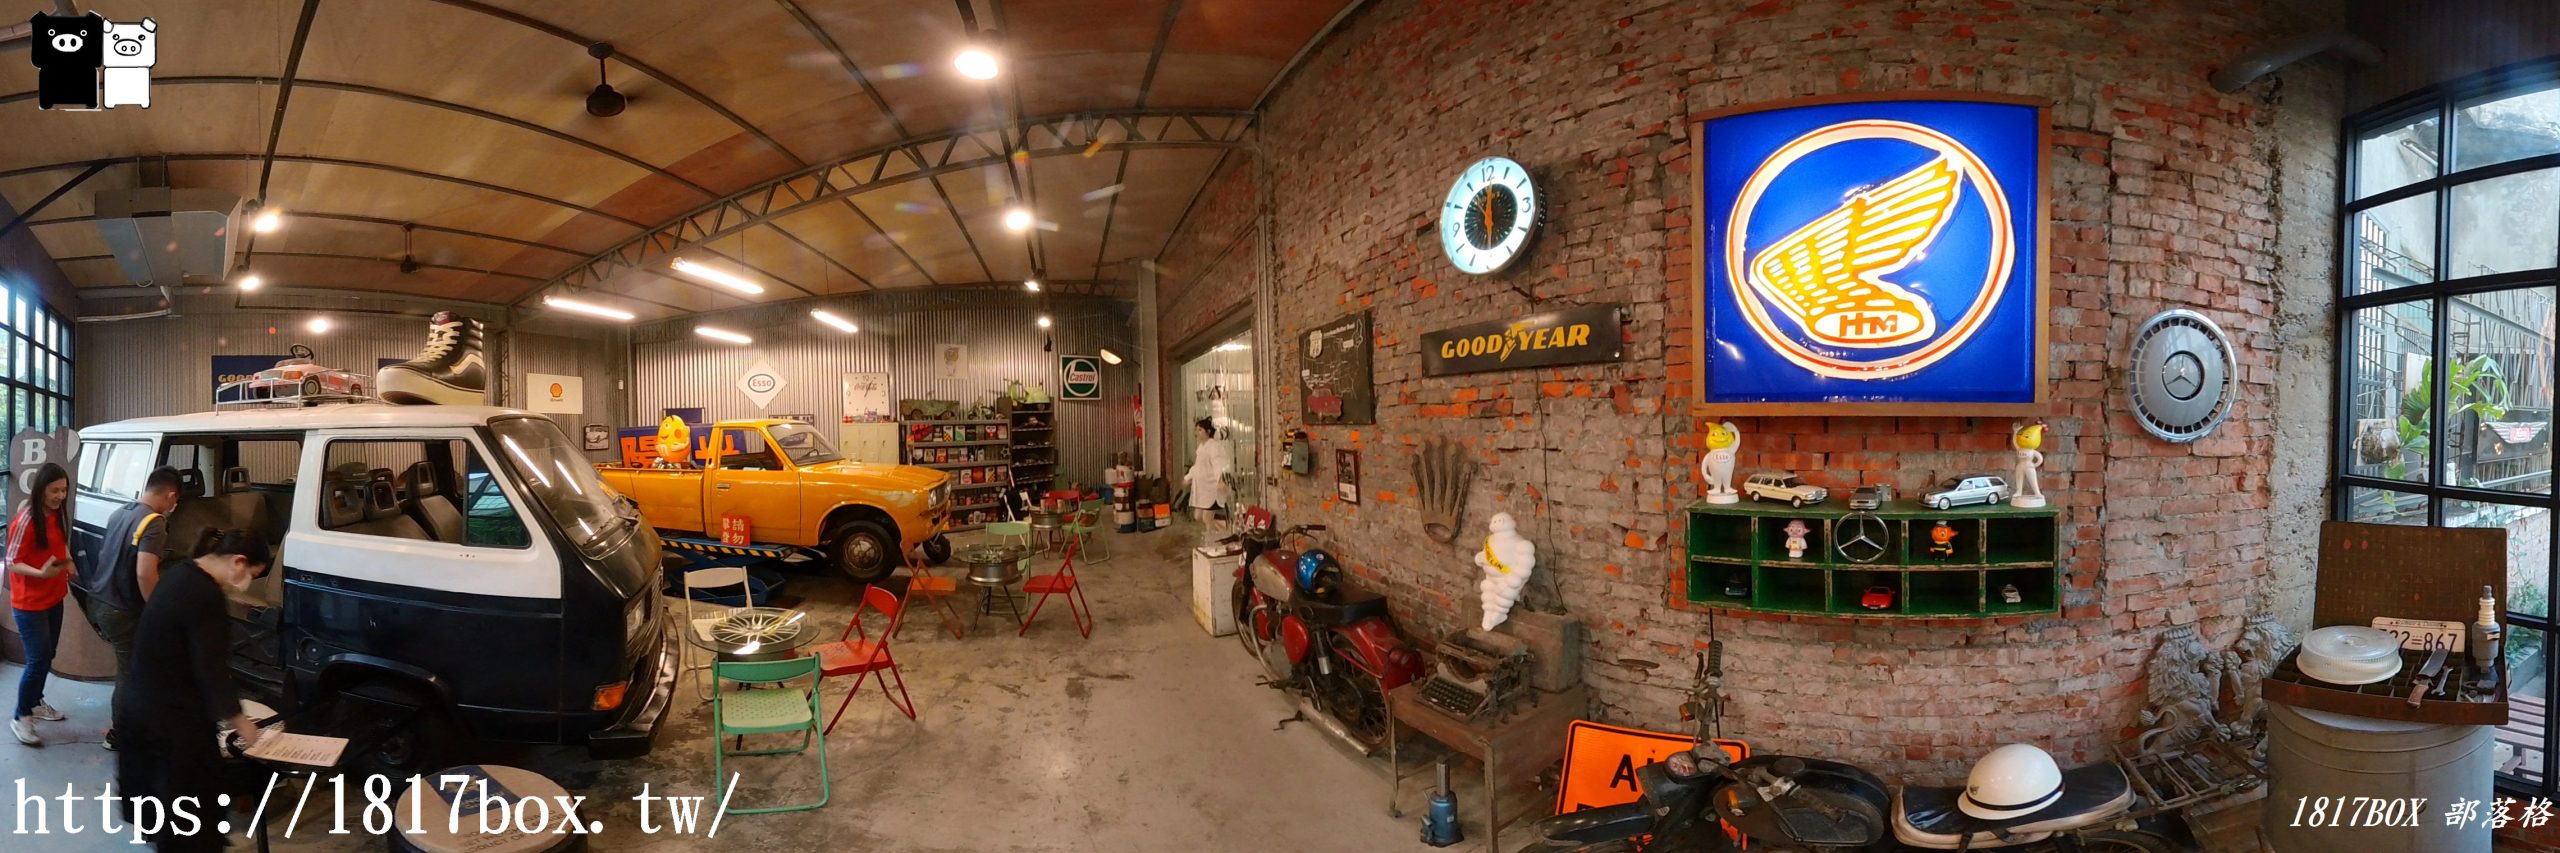 【台中。南區】魚刺人雞蛋糕-修車廠店。復古美式工業風。今日蜜麻花雞蛋糕